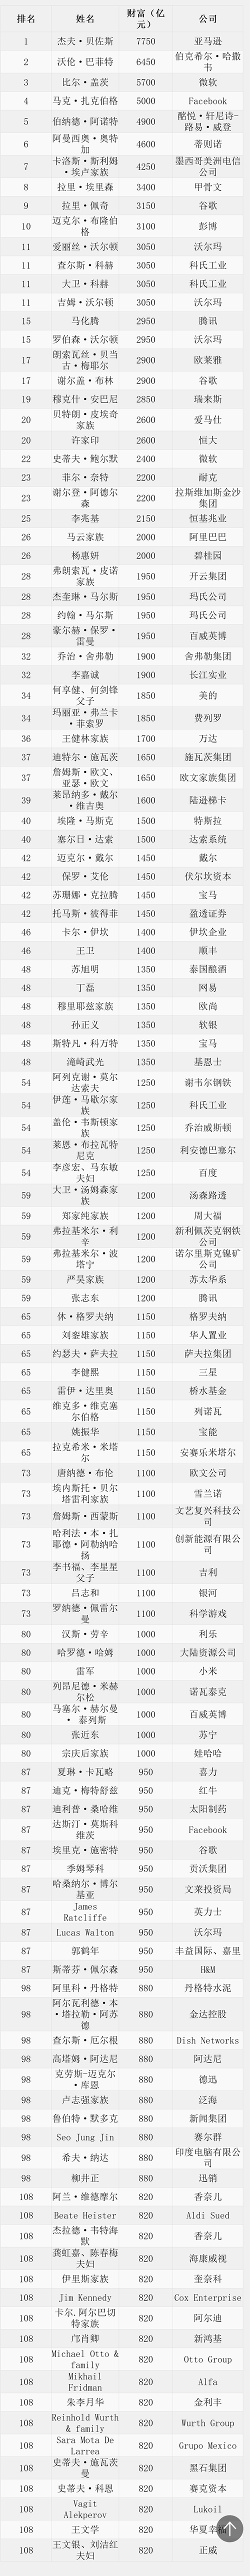 《2018胡润全球富豪榜》前100强